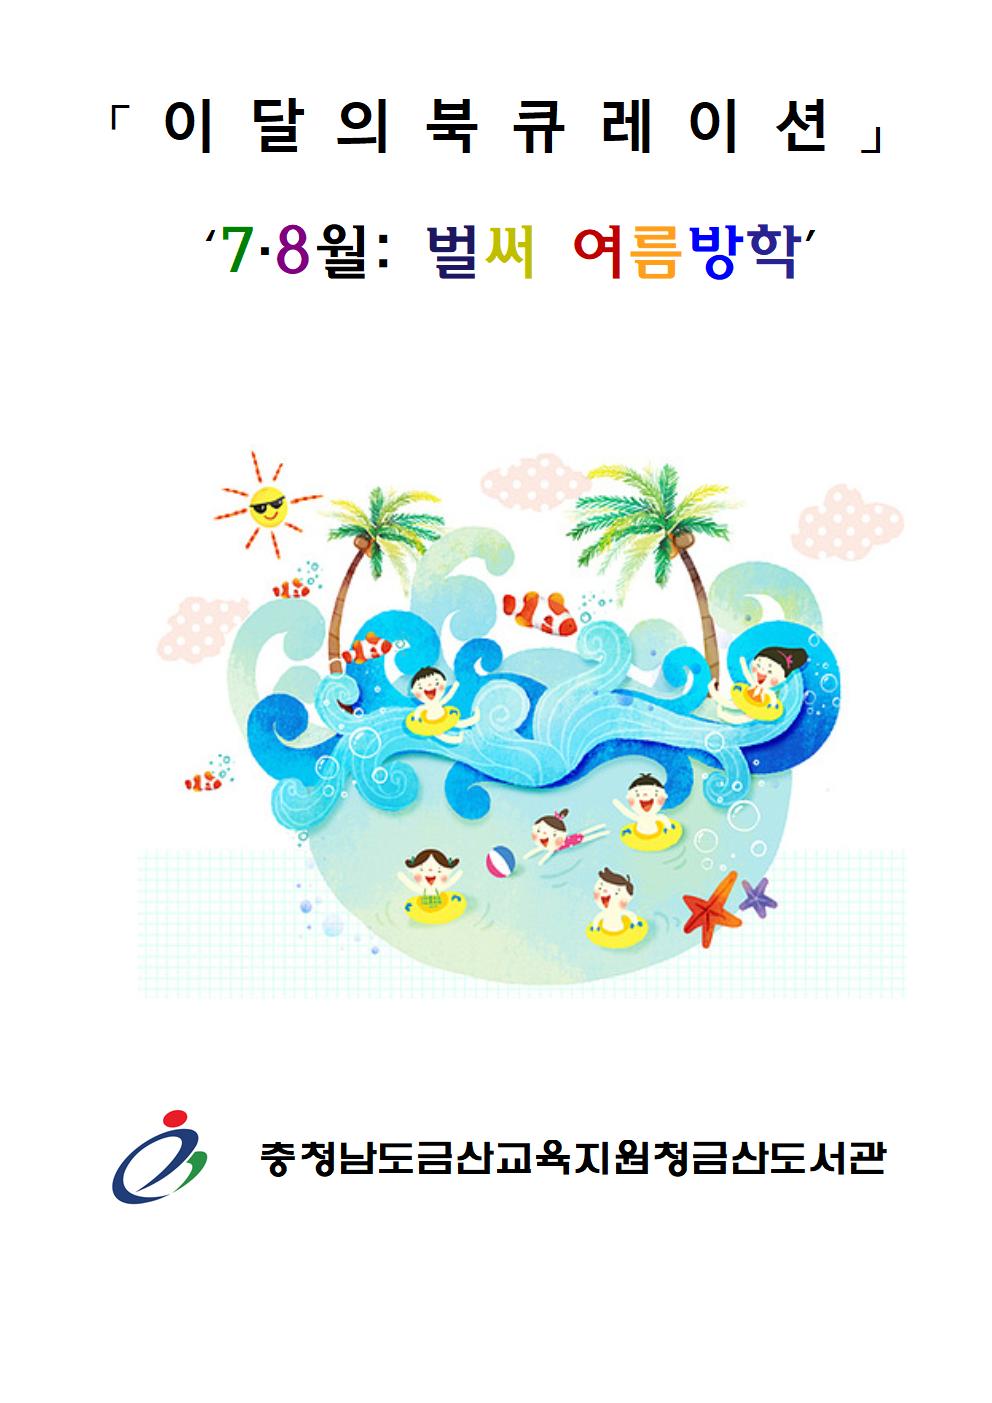 7-8월 북큐레이션 온라인 전시 운영안내